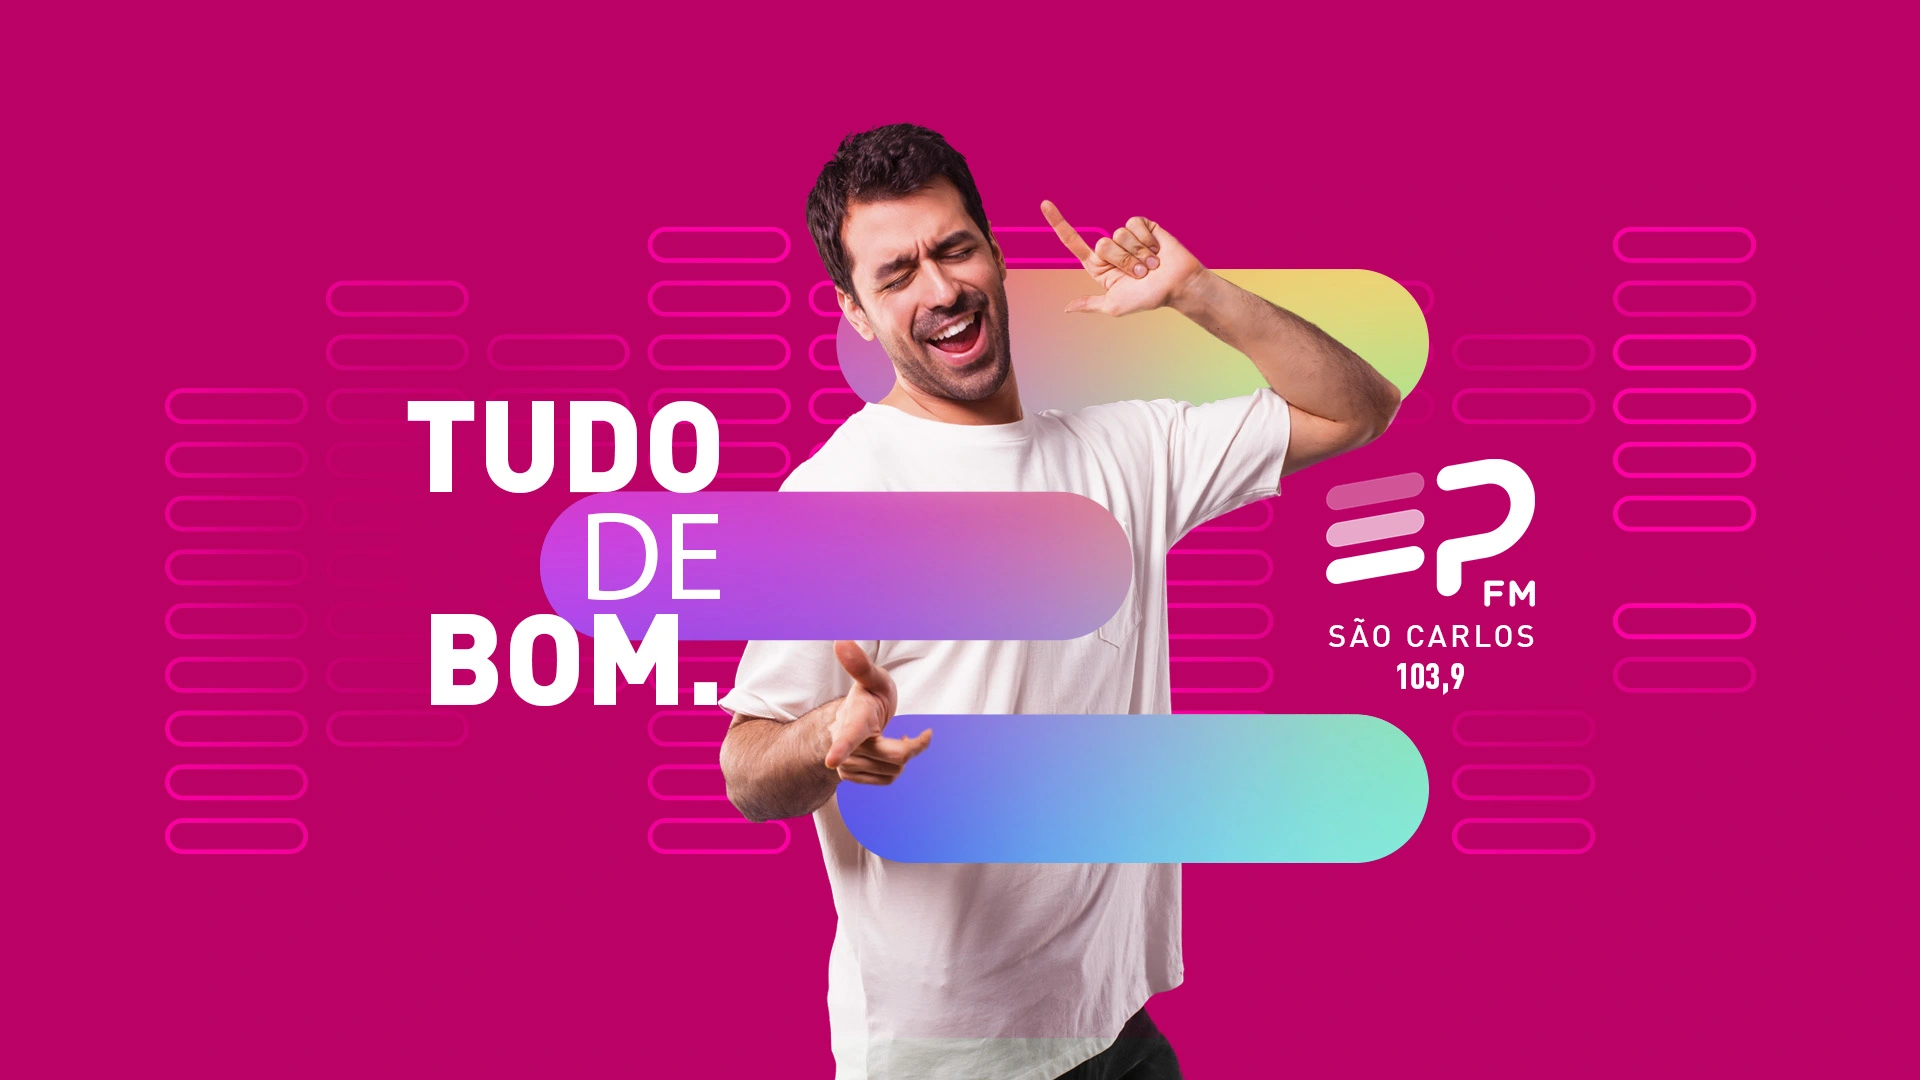 EP FM São Carlos - Tudo de bom.